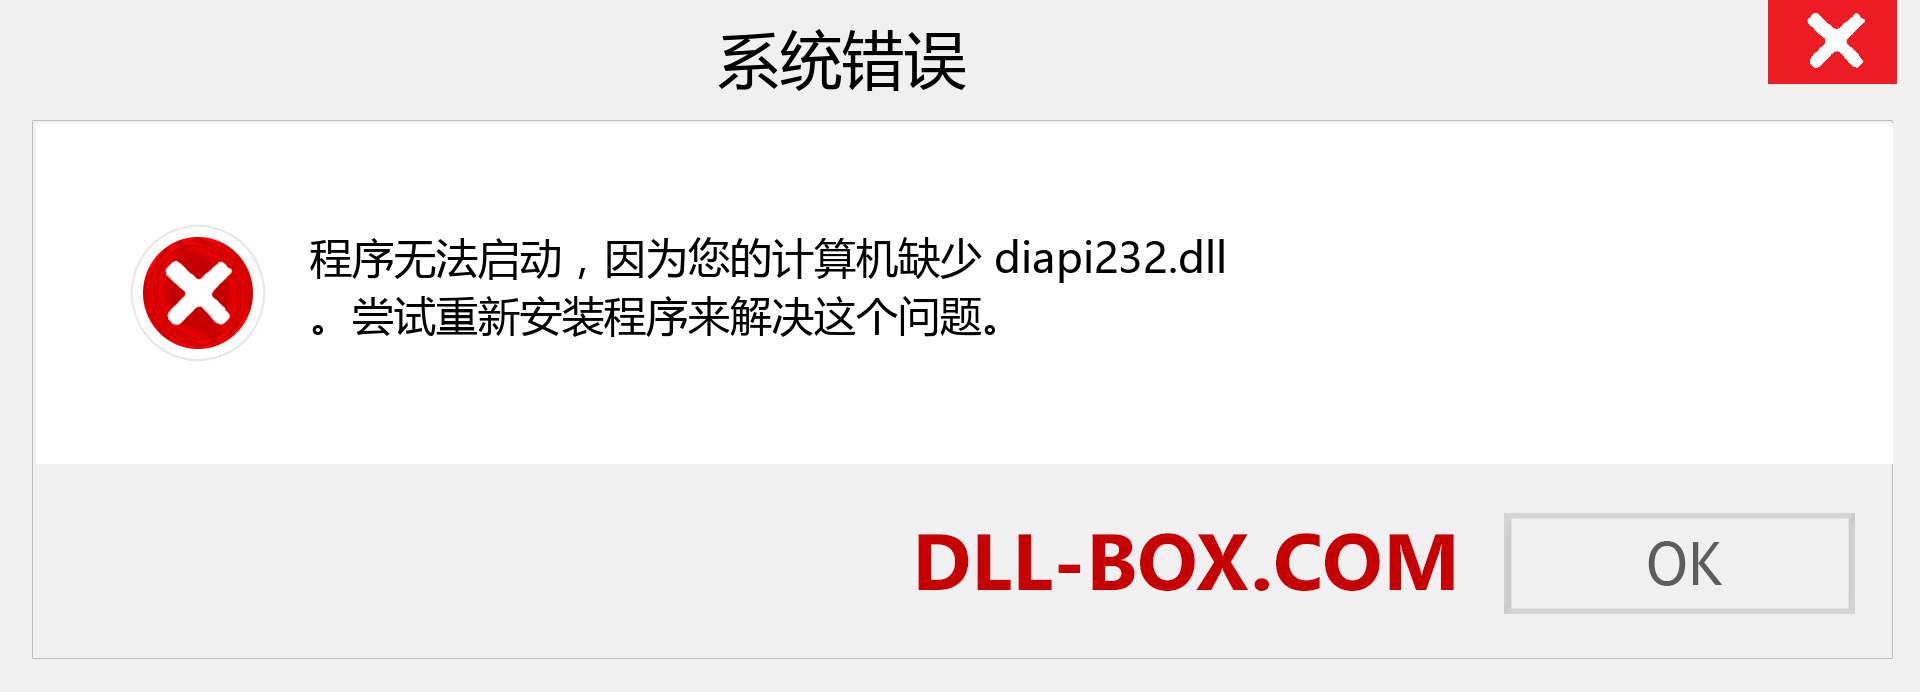 diapi232.dll 文件丢失？。 适用于 Windows 7、8、10 的下载 - 修复 Windows、照片、图像上的 diapi232 dll 丢失错误